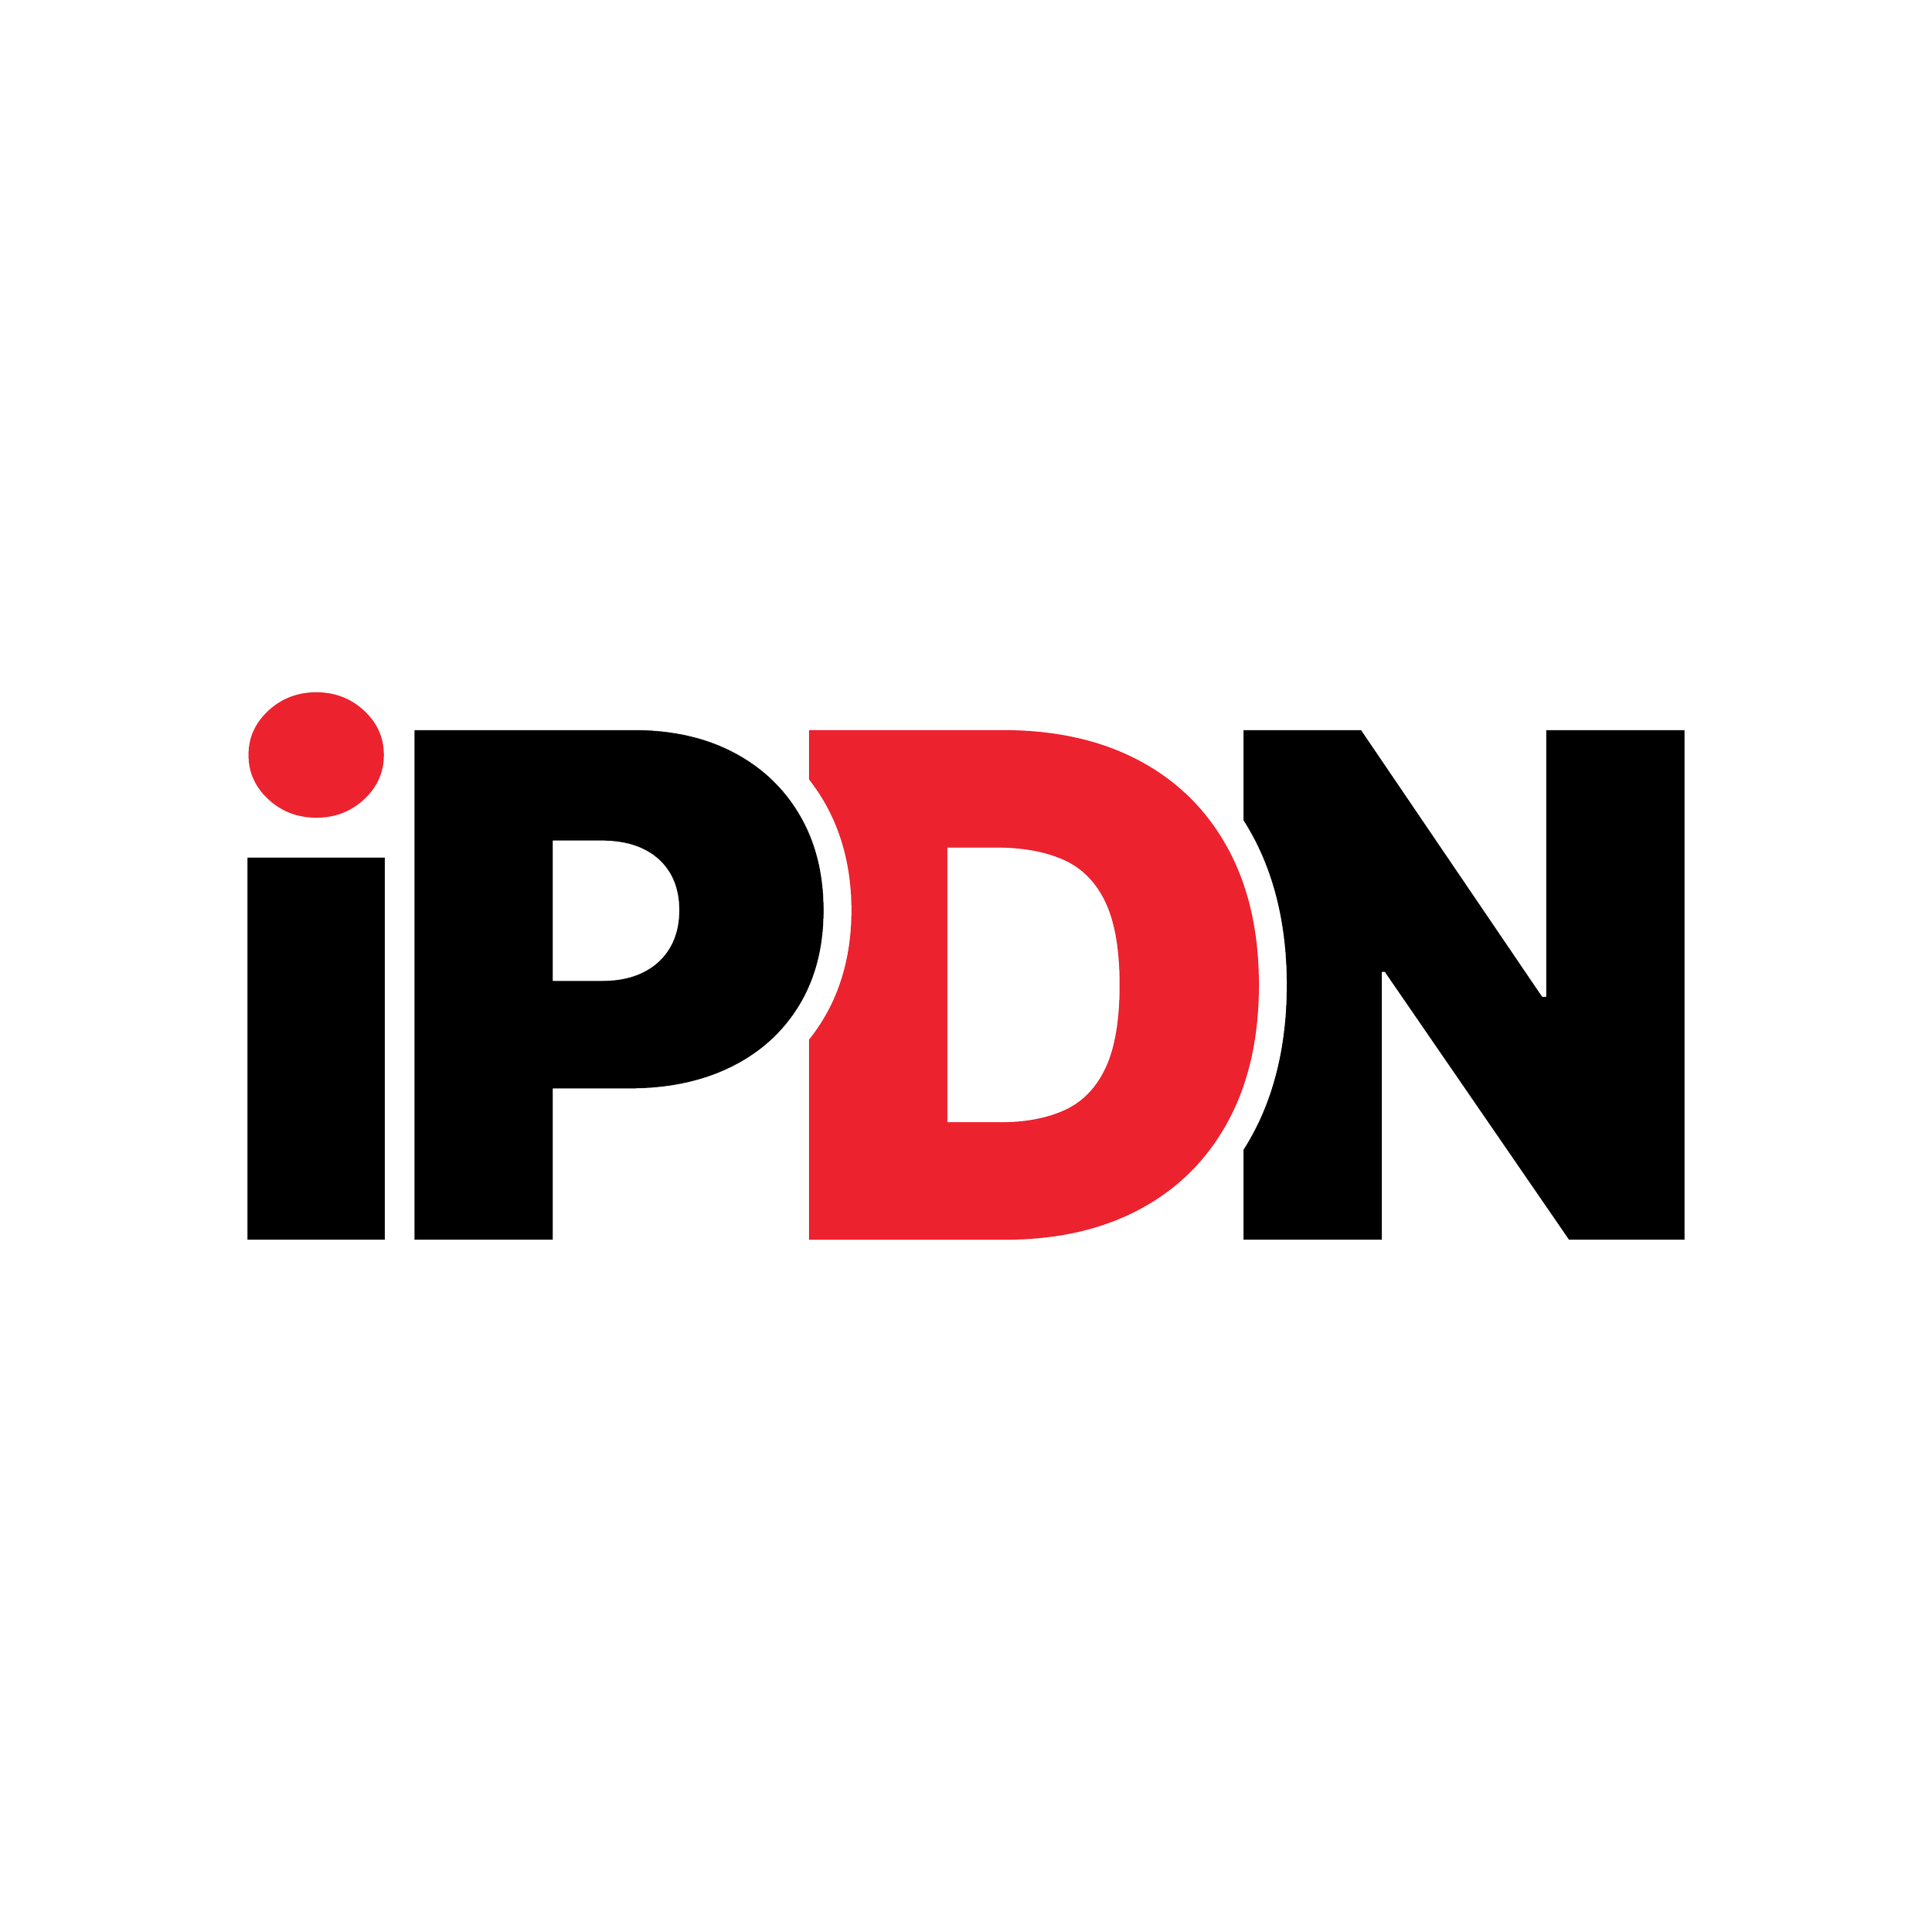 iPDN-LogoDesign-LetteringWorks-Color.png